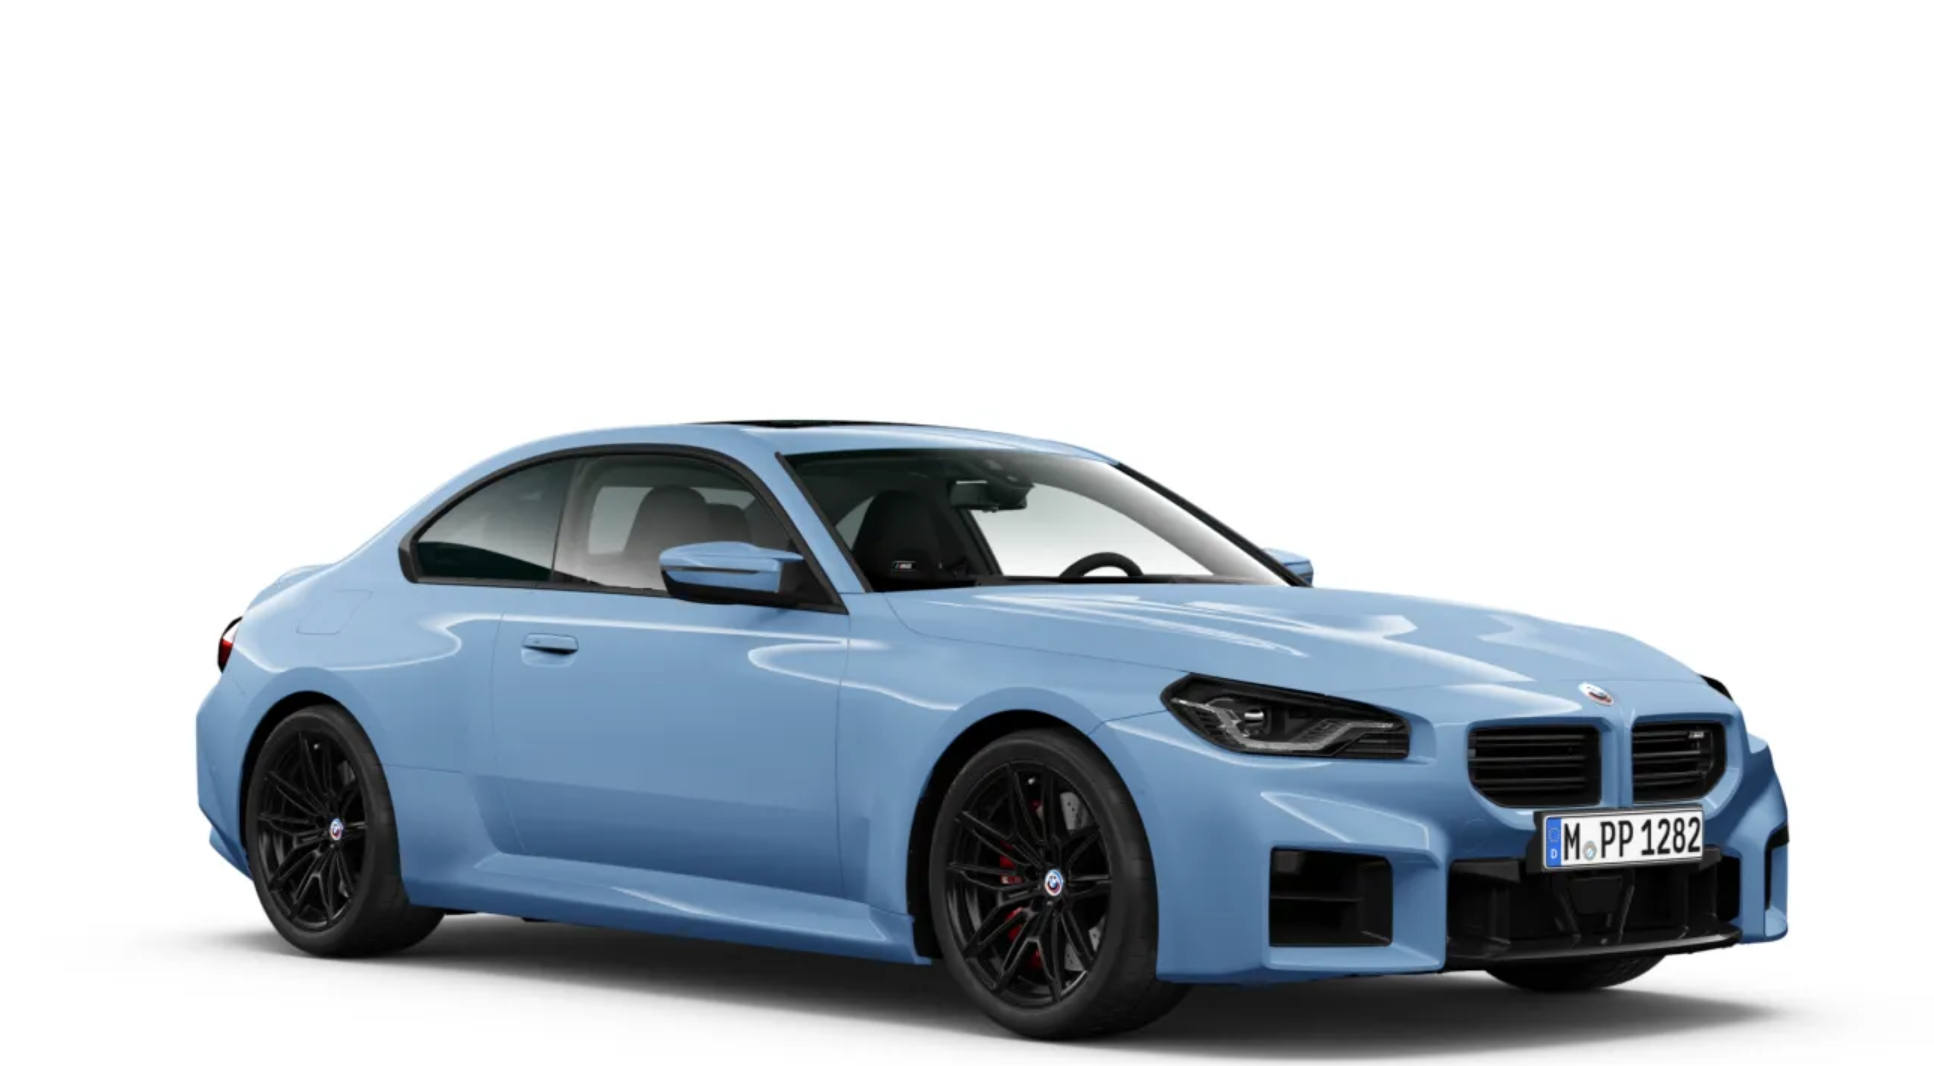 BMW M2 COUPÉ | novinka | sportovní coupé | 460 koní | pohon zadních kol | první auta ve výrobě | objednávky online | auto eshop AUTOiBUY.com